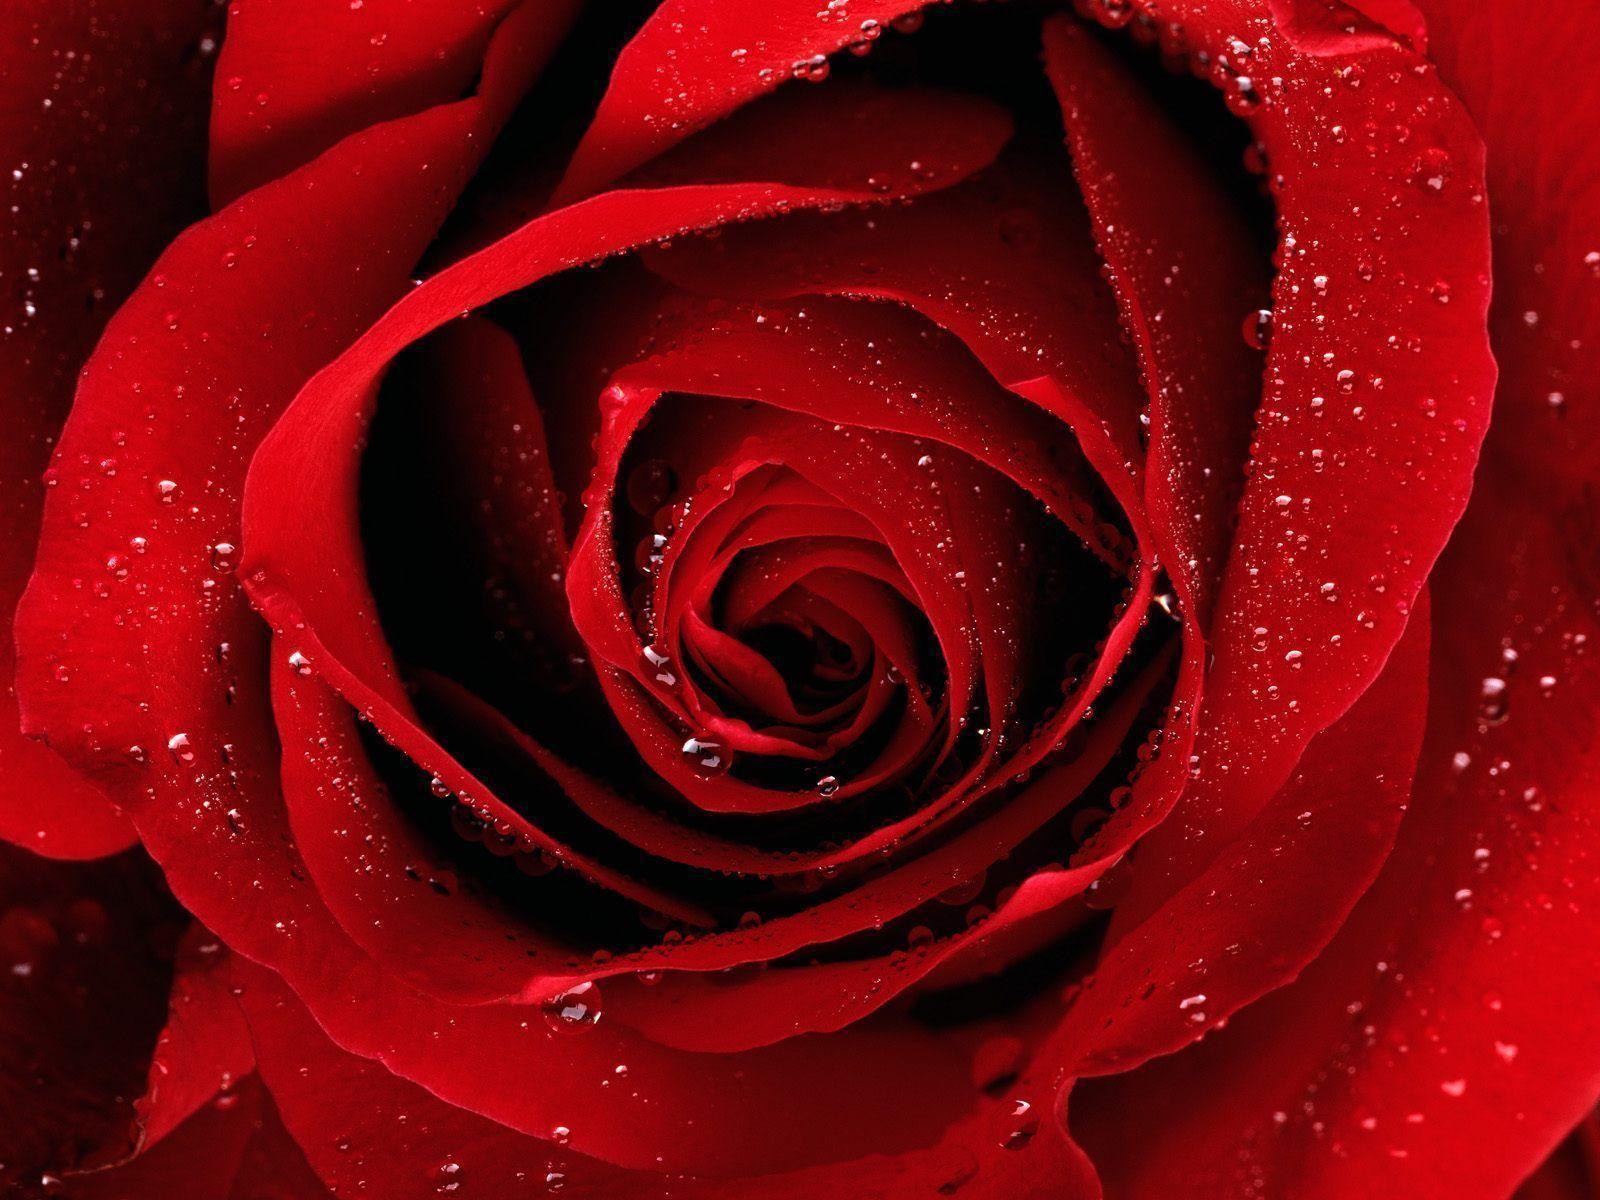 Red Beauty Flower HD Image Wallpaper. walldesktophd